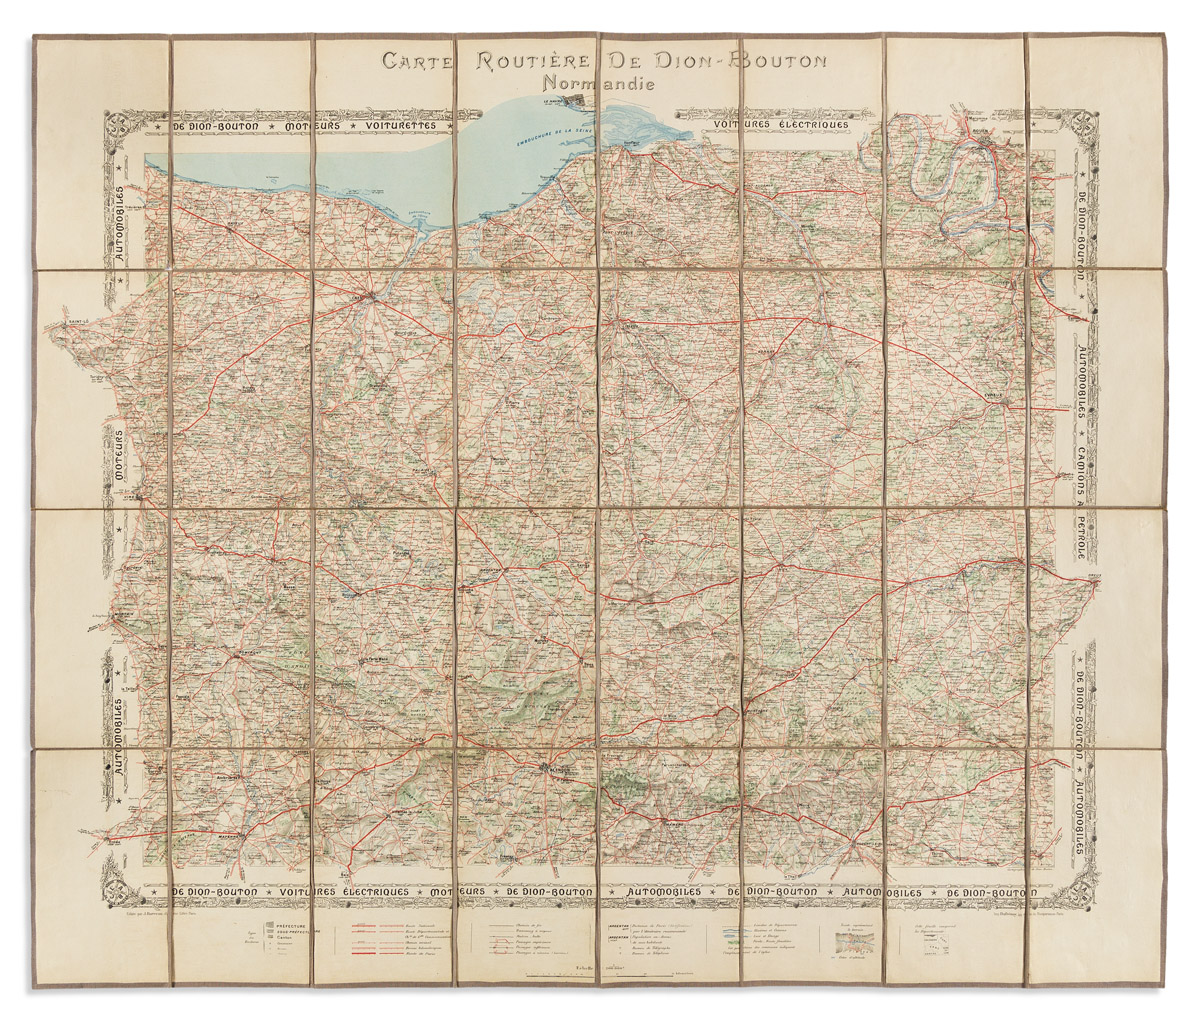 (AUTOMOBILE MAP.) J. Barreau; for De Dion-Bouton. Carte Routiere de Dion-Bouton. Normandie.